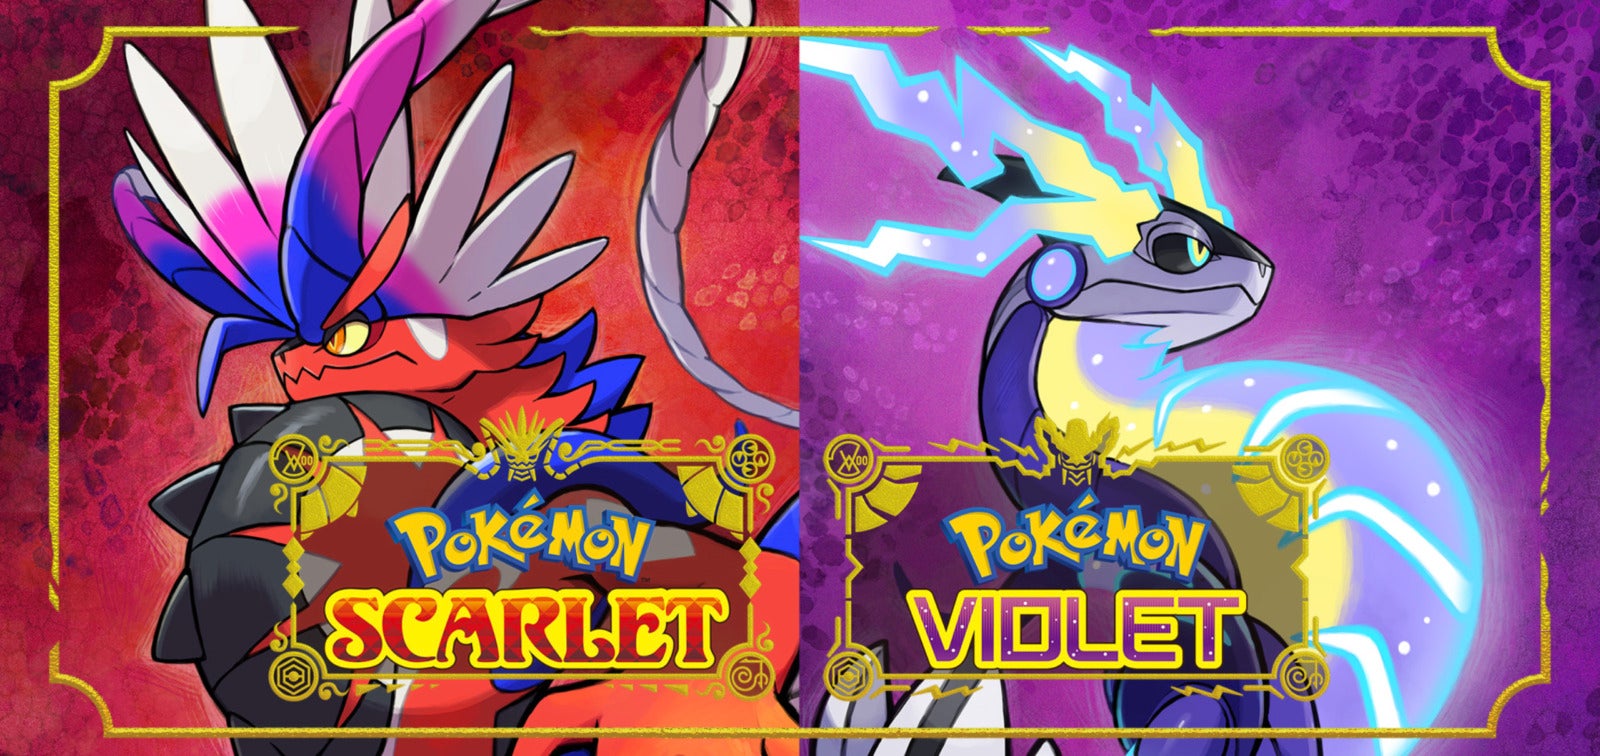 Pokémon Scarlet และ Pokémon Violet